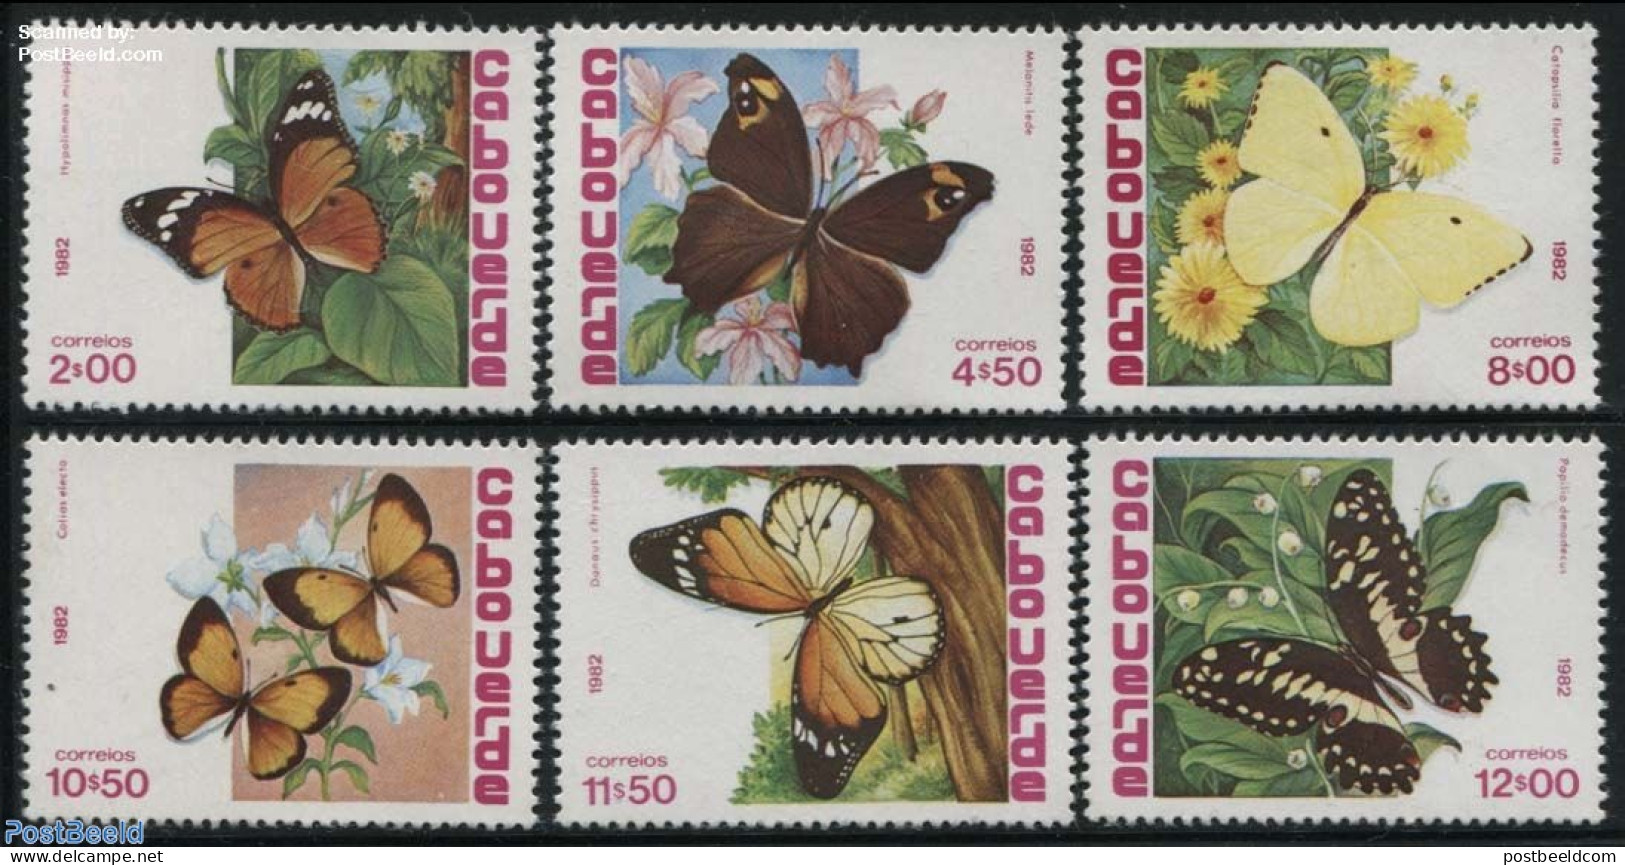 Cape Verde 1982 Butterflies 6v, Mint NH, Nature - Butterflies - Cape Verde